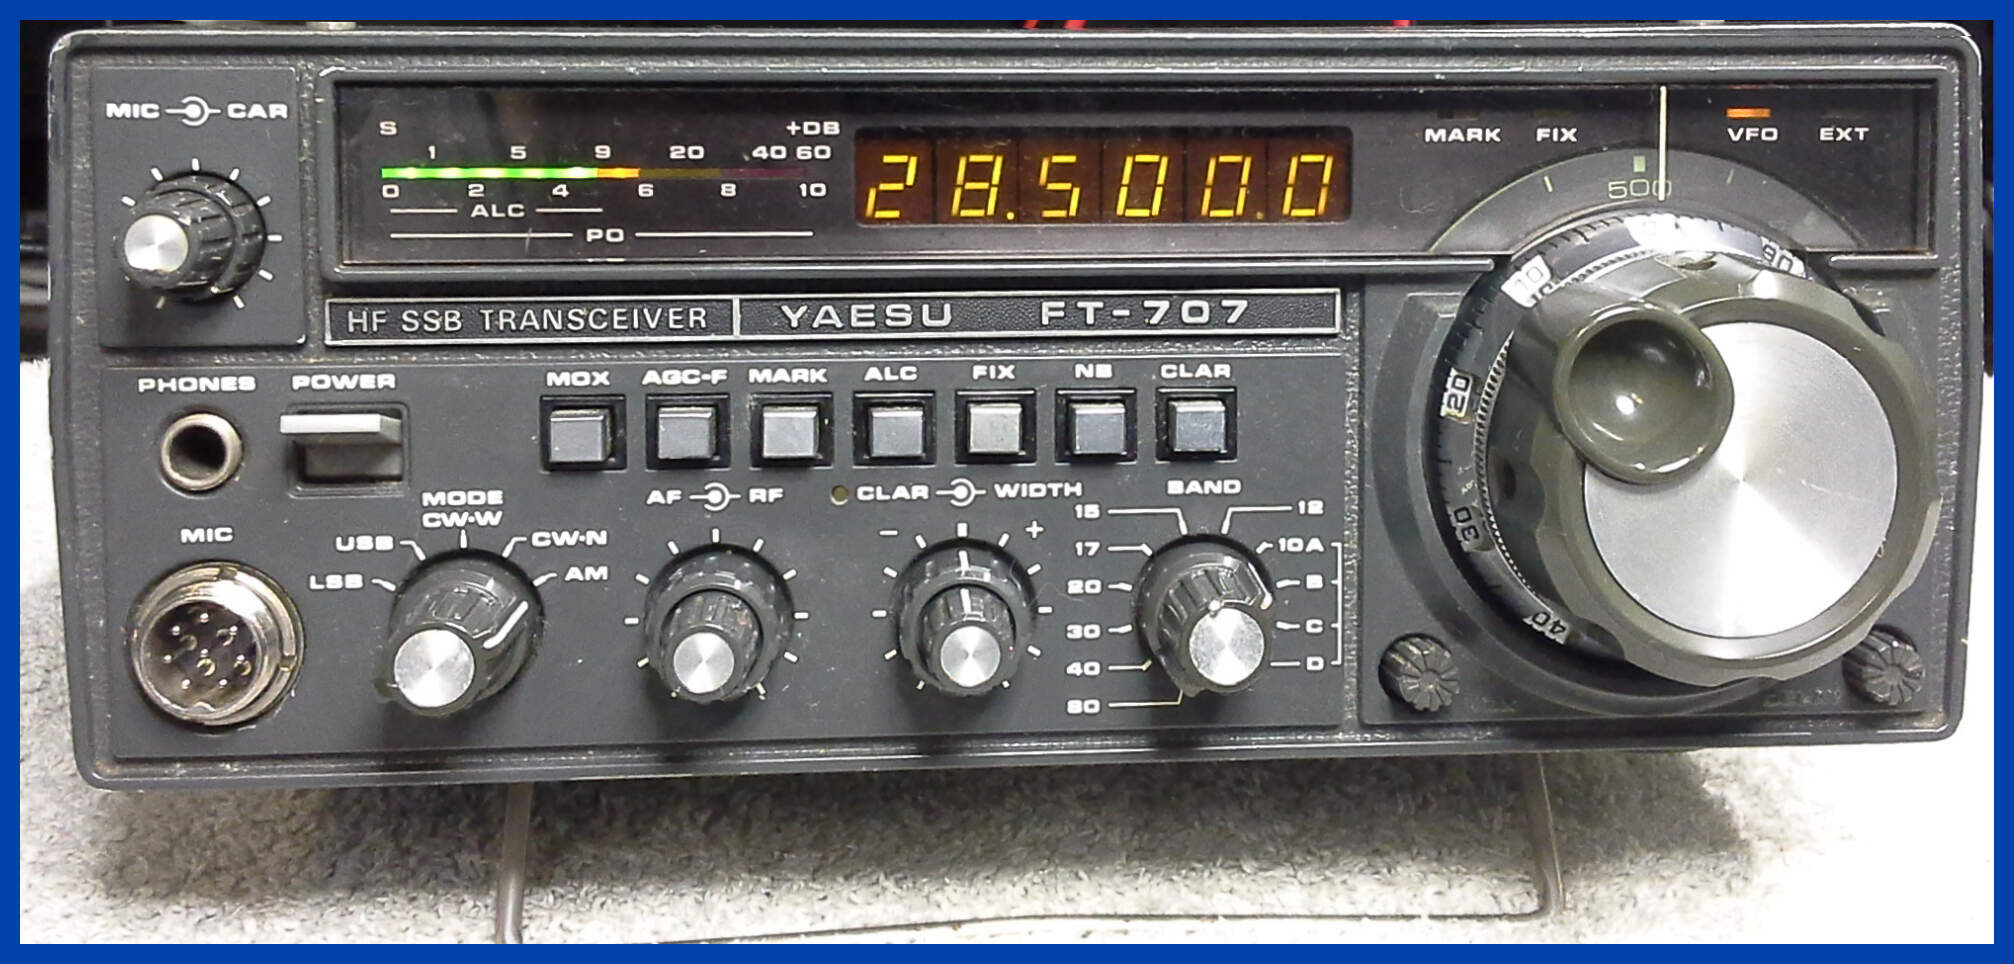 Yaesu FT707 HF Transciver Receiving AM